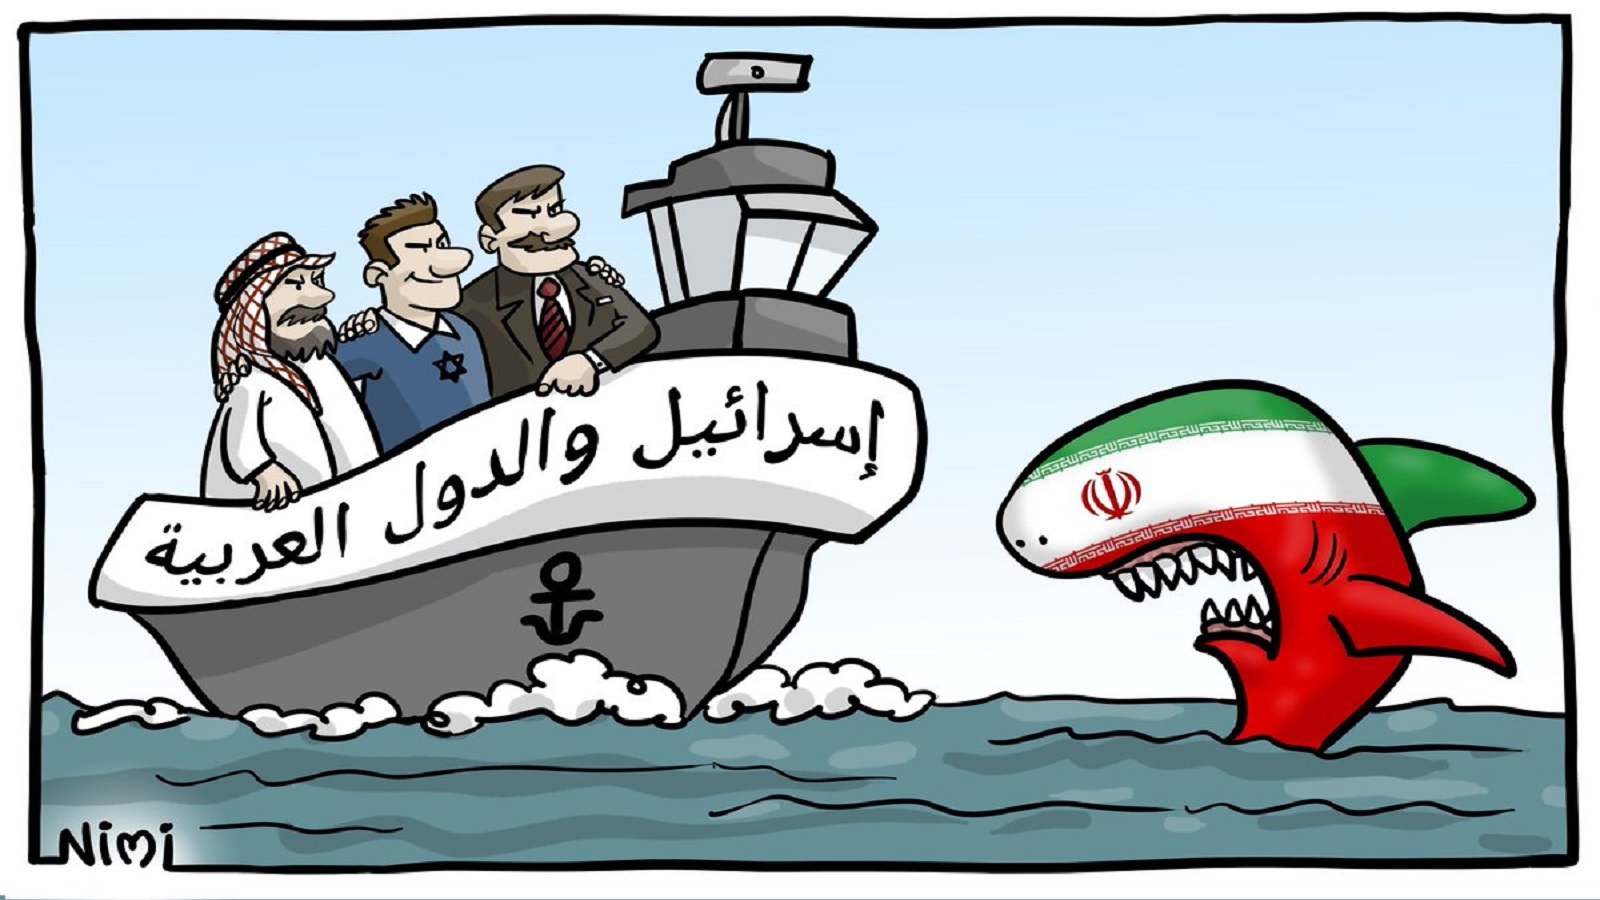 إسرائيل والعرب "في قارب واحد"